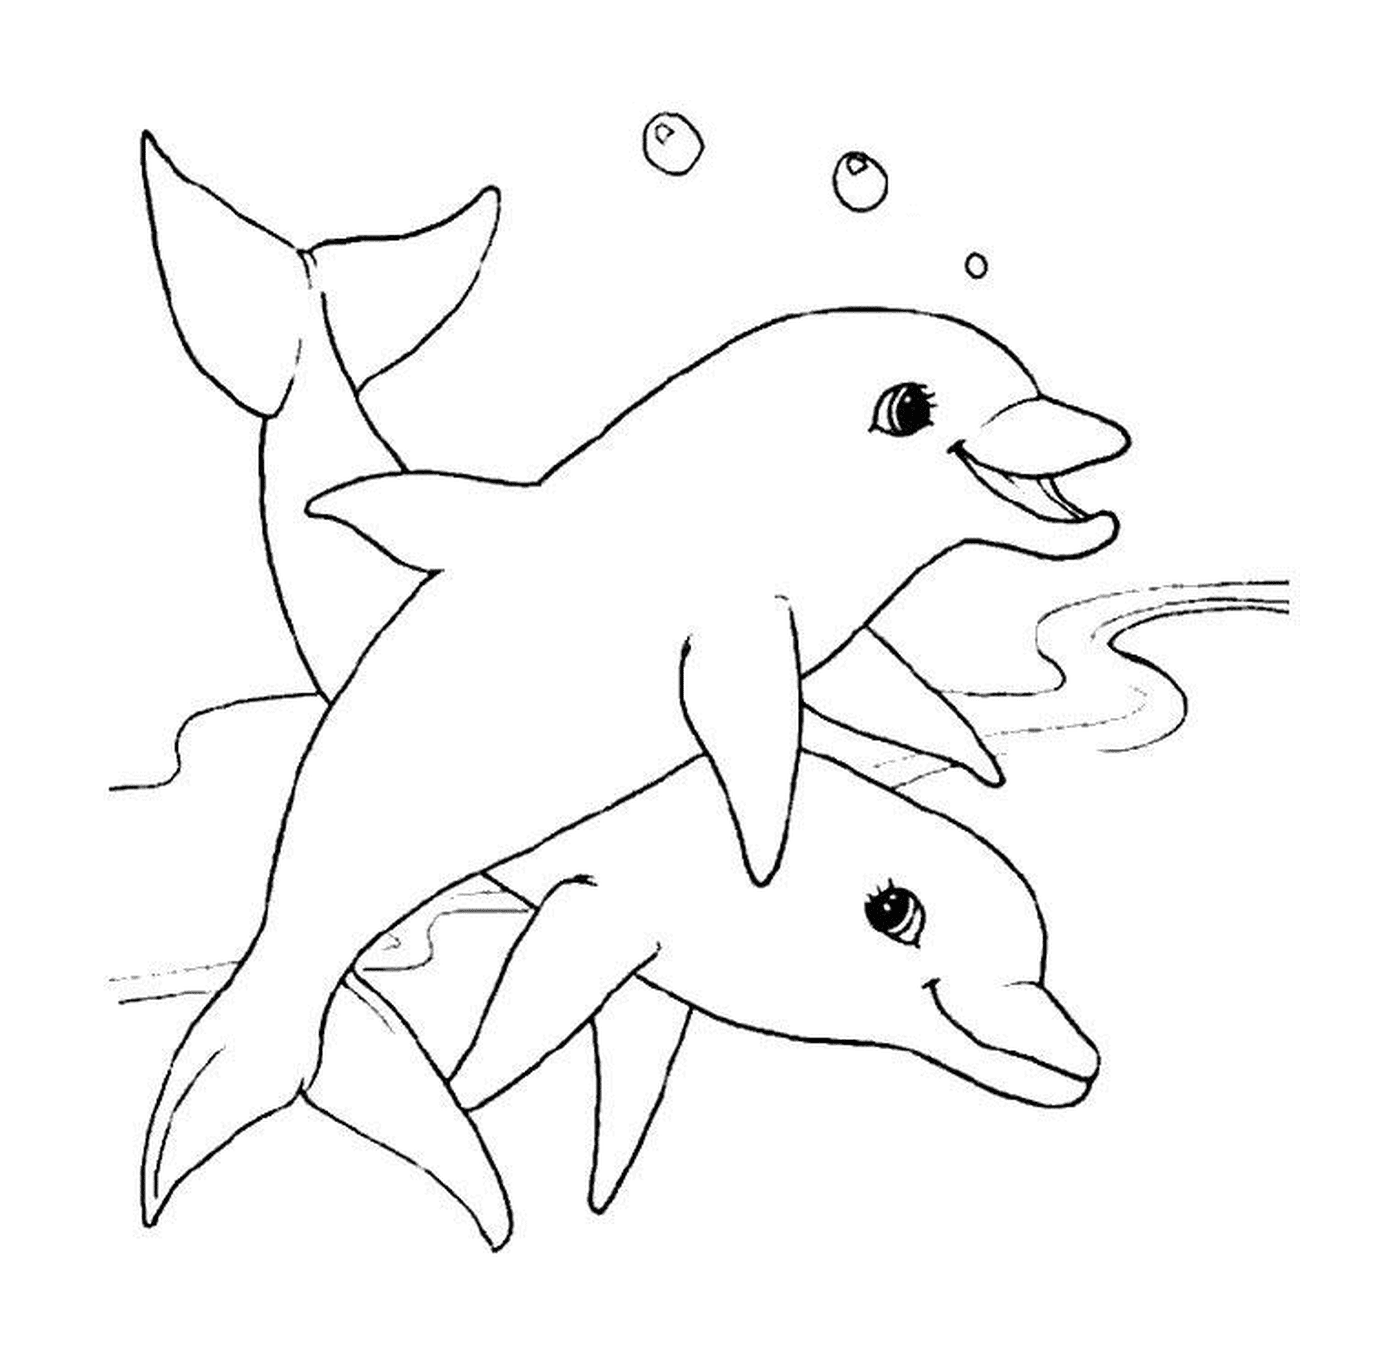  Dois golfinhos em preto e branco 